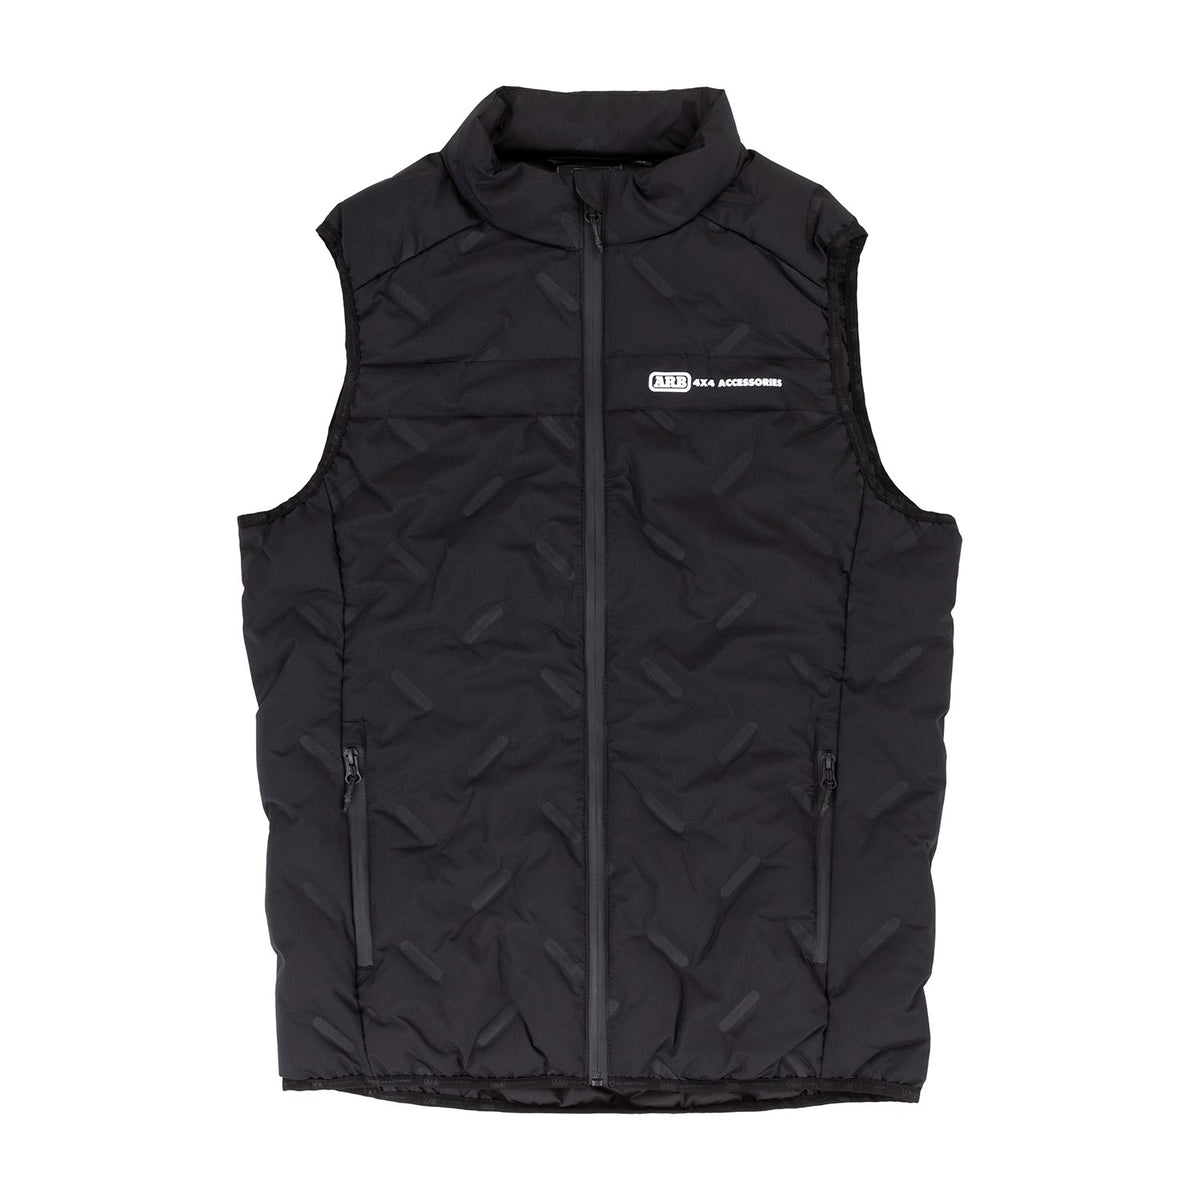 Men's Altitude Puffer Vest – ARB 4X4 Accessories